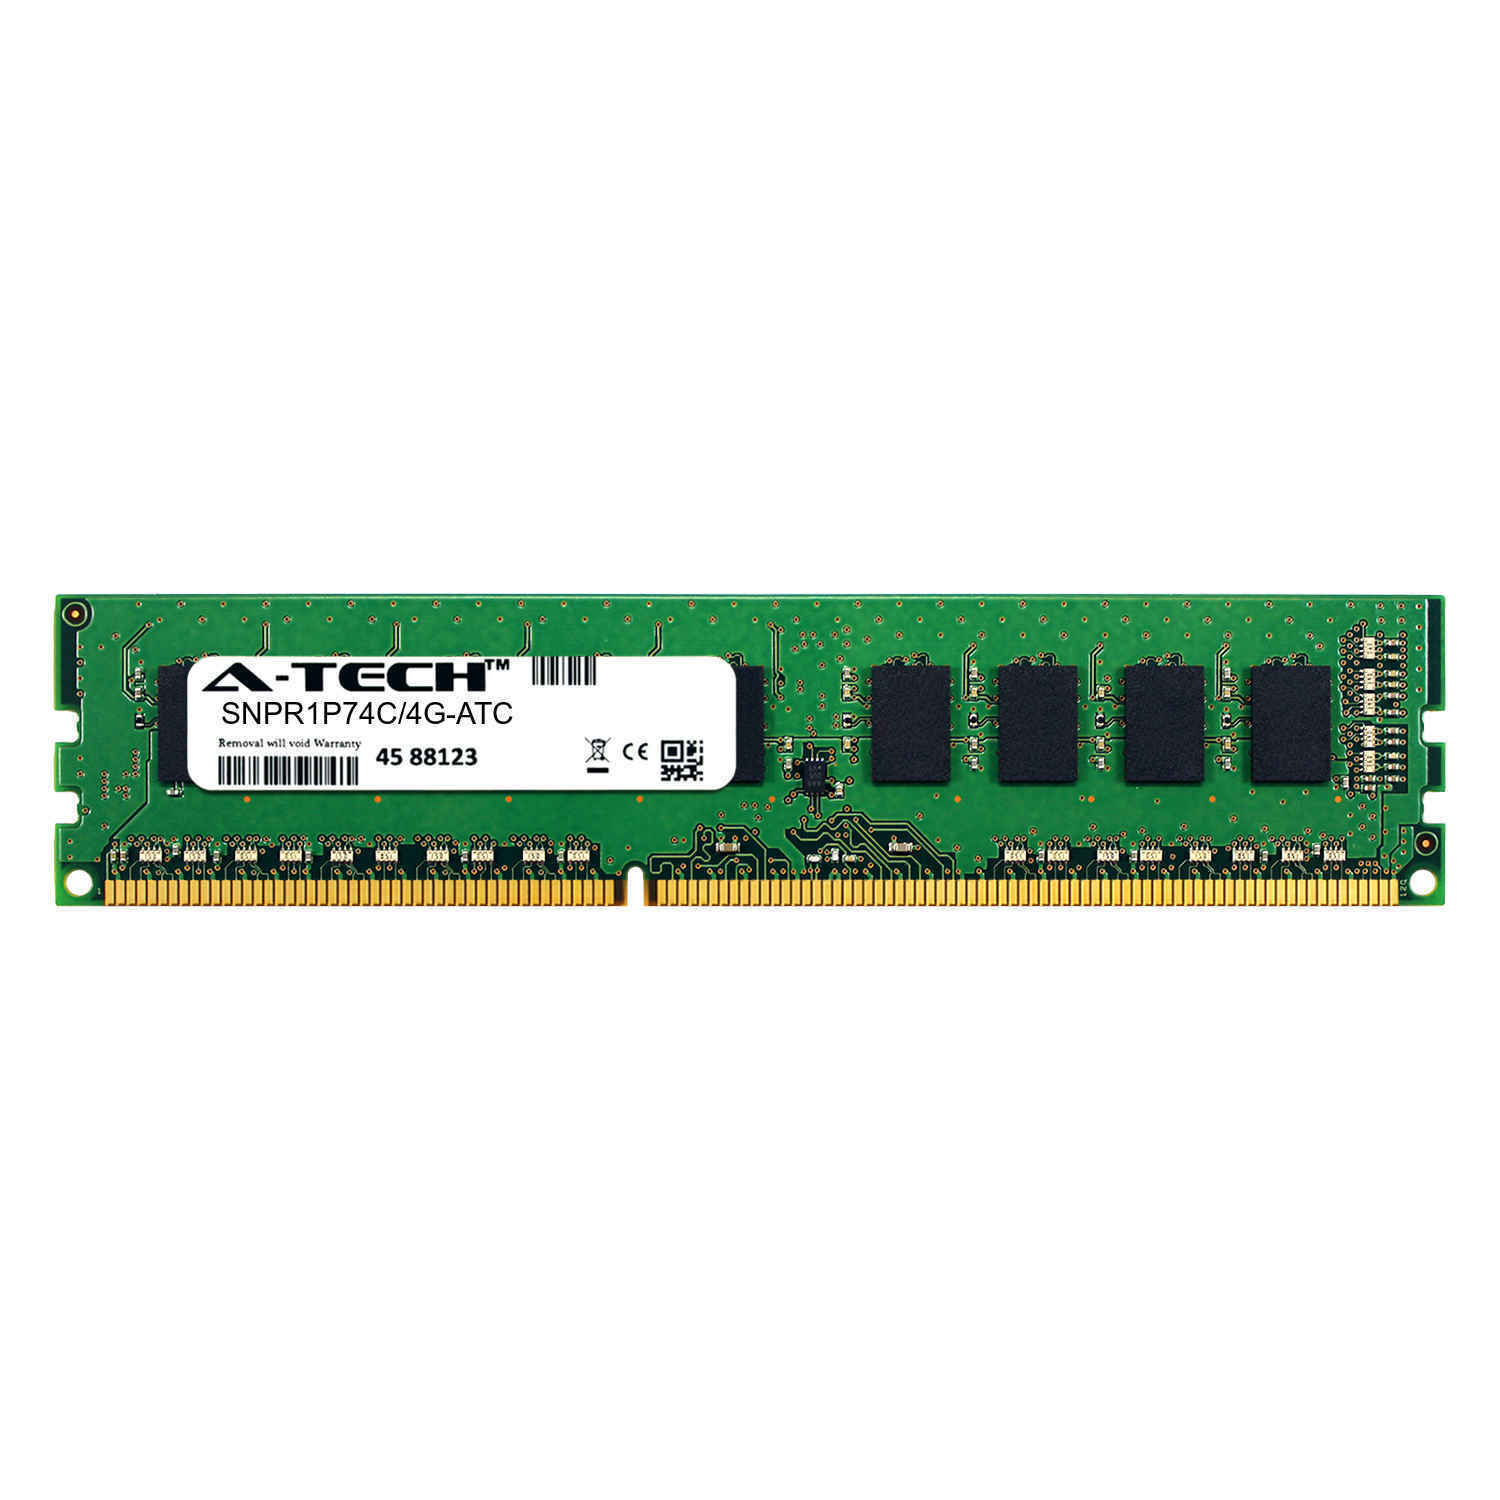 4GB DDR3 PC3-10600E ECC UDIMM (Dell SNPR1P74C/4G Equivalent) Server Memory RAM